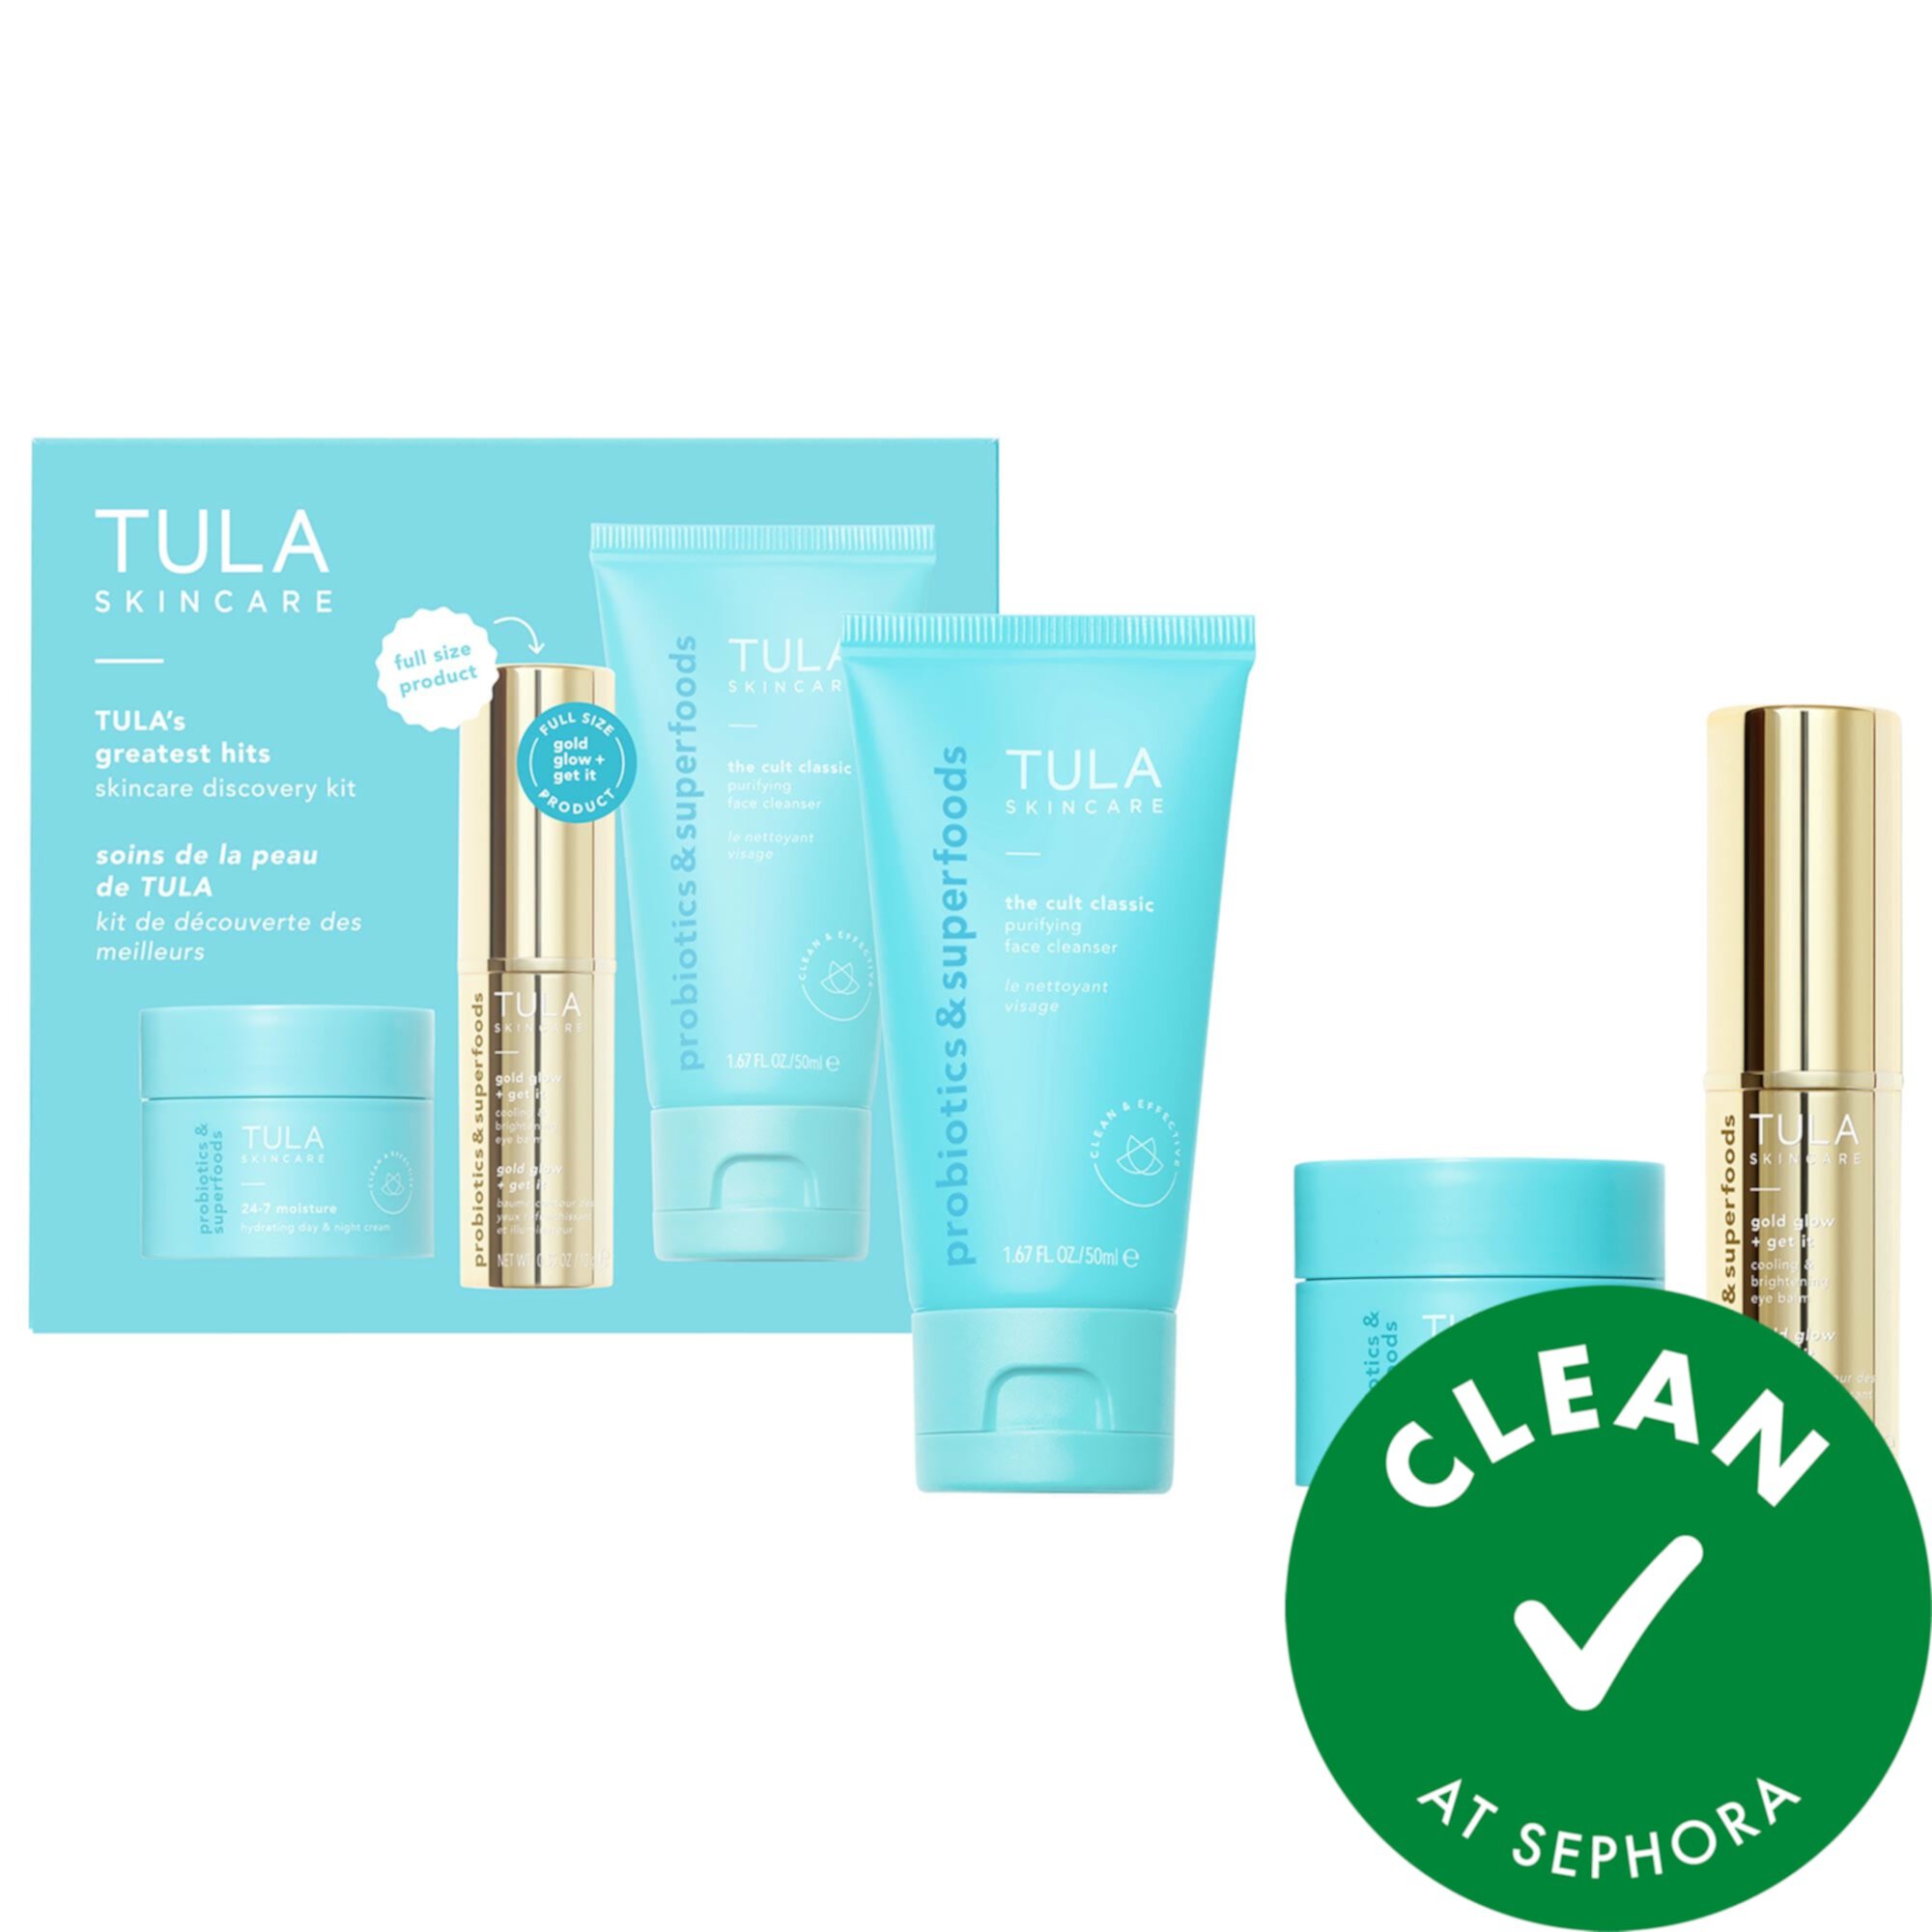 TULA's Greatest Hits Skincare Discovery Kit TULA Skincare